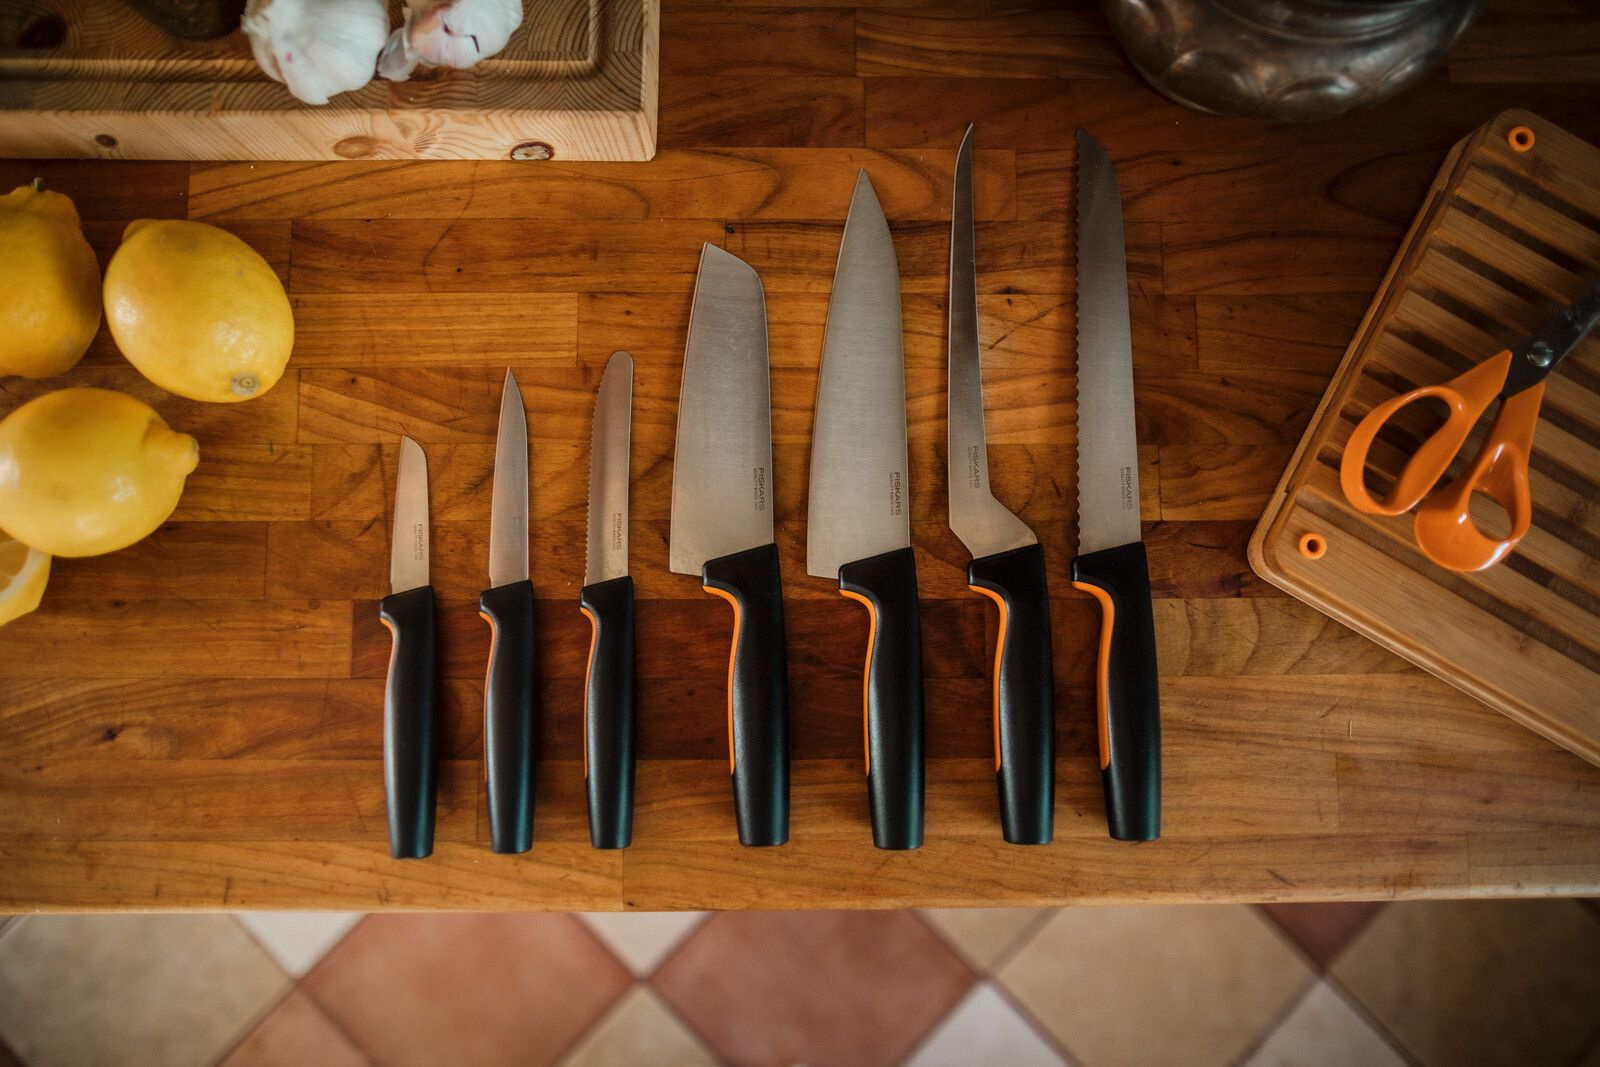 Нож кухонный Fiskars Functional Form 1057540 стальной филейный лезв.216мм прямая заточка черный/оранжевый